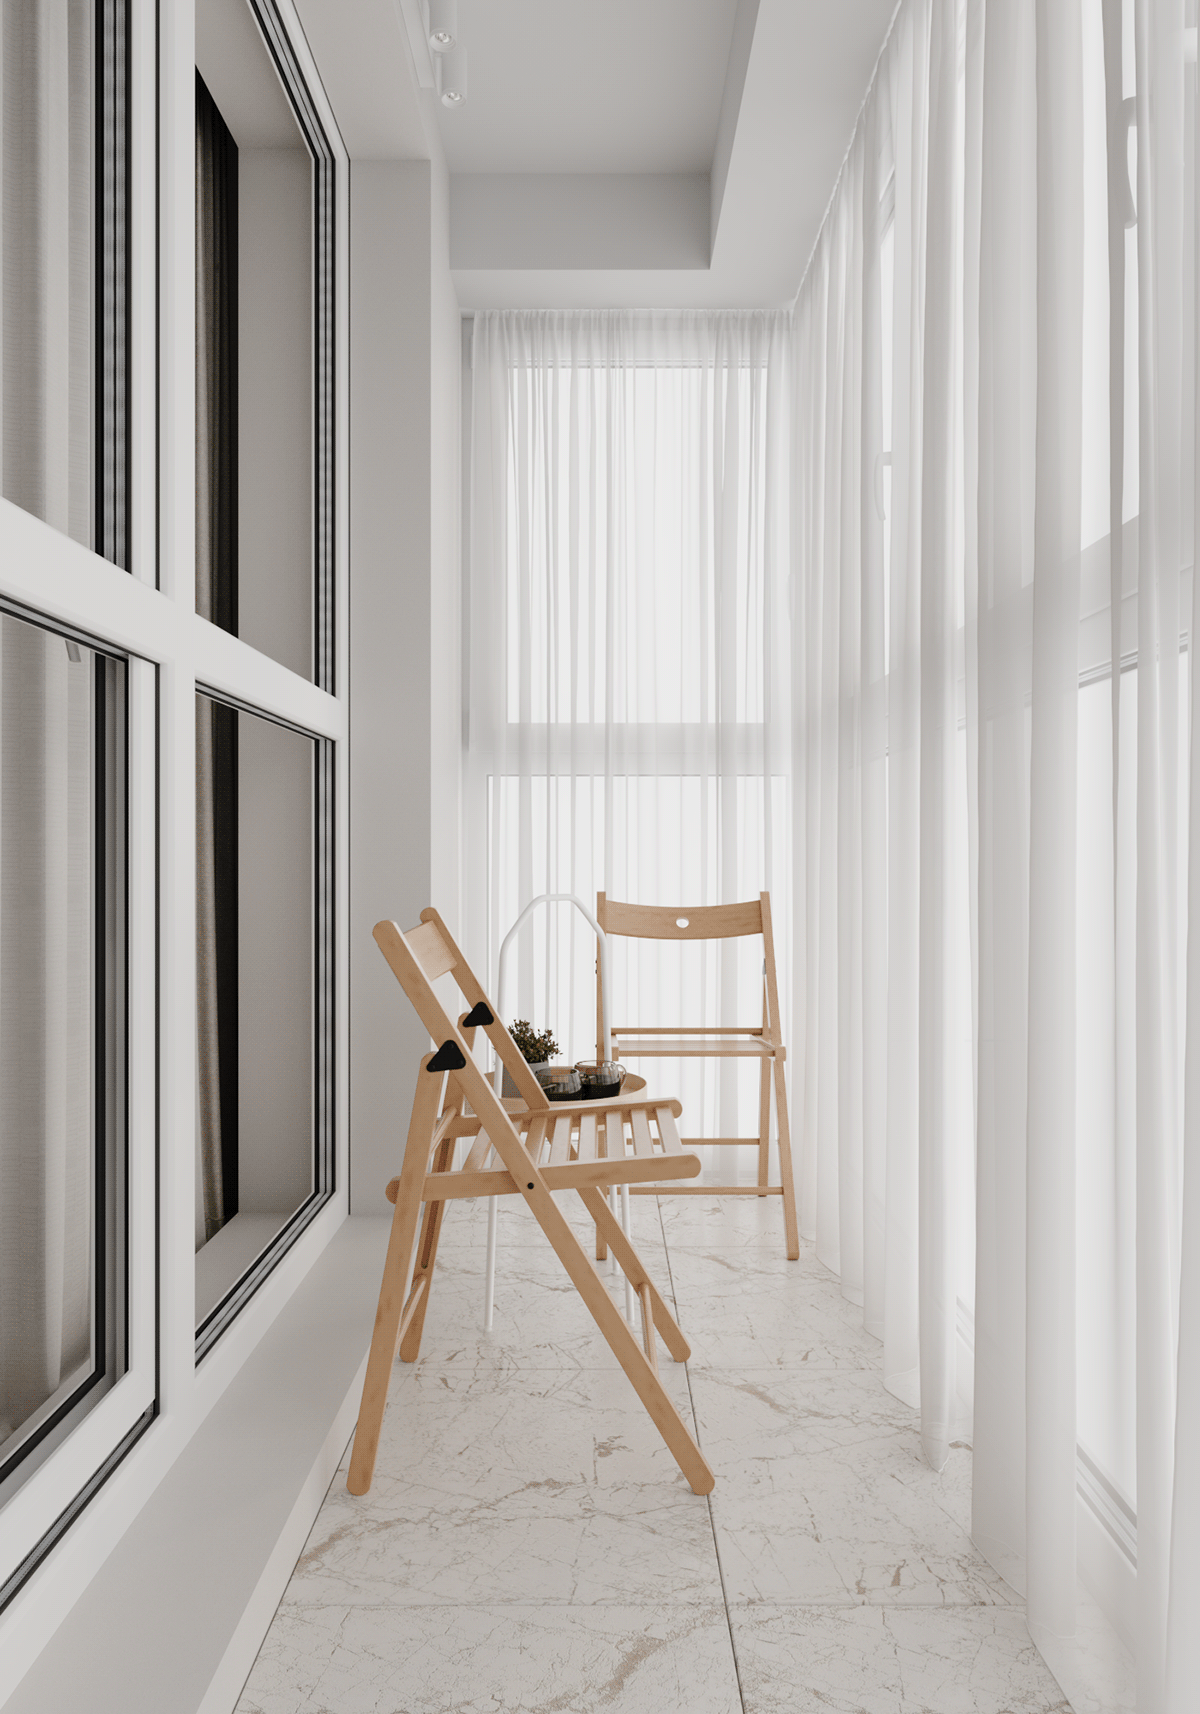 Interior modern interior дизайн интерьера интерьер skandinavian Дизайн квартиры Проект квартиры современный дизайн